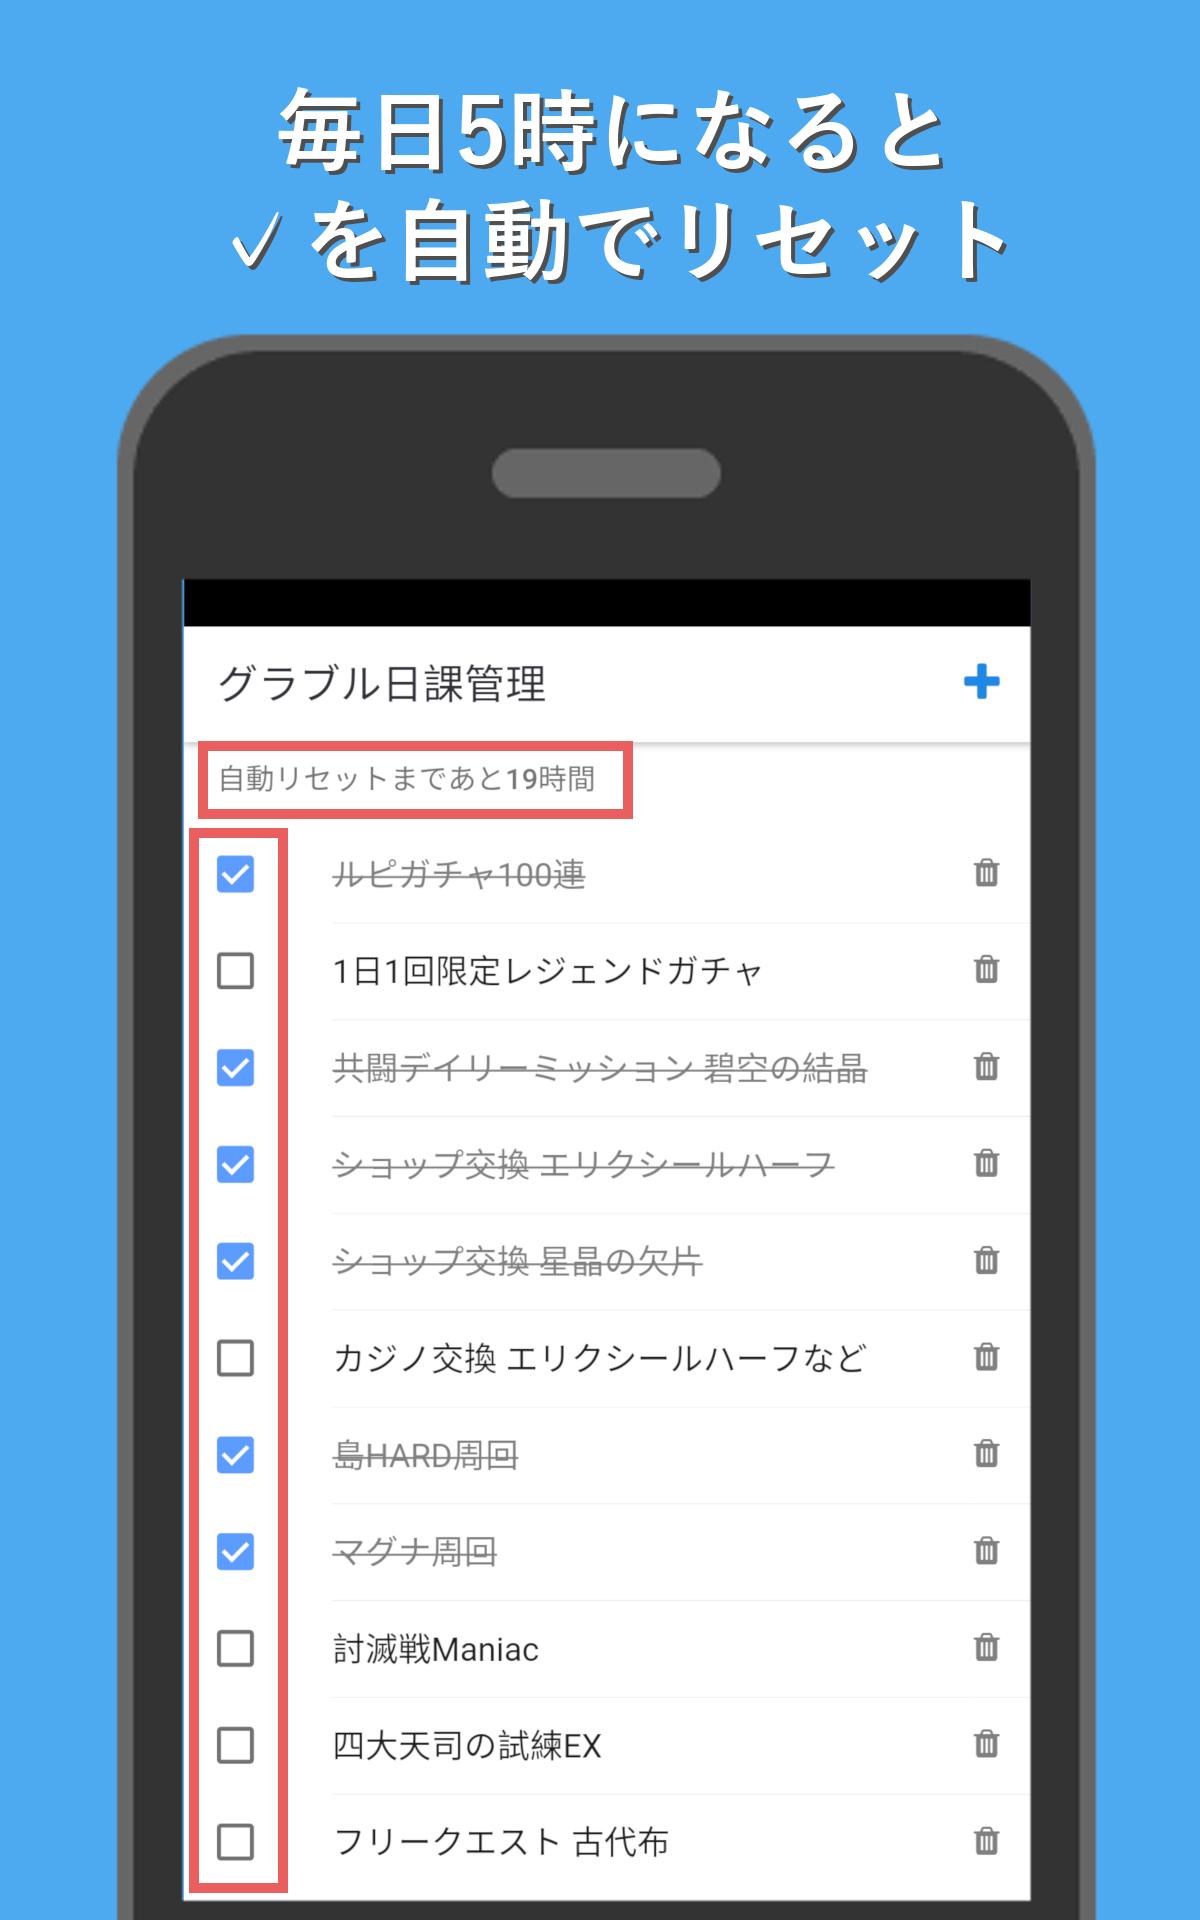 グラブル日課管理 For Android Apk Download